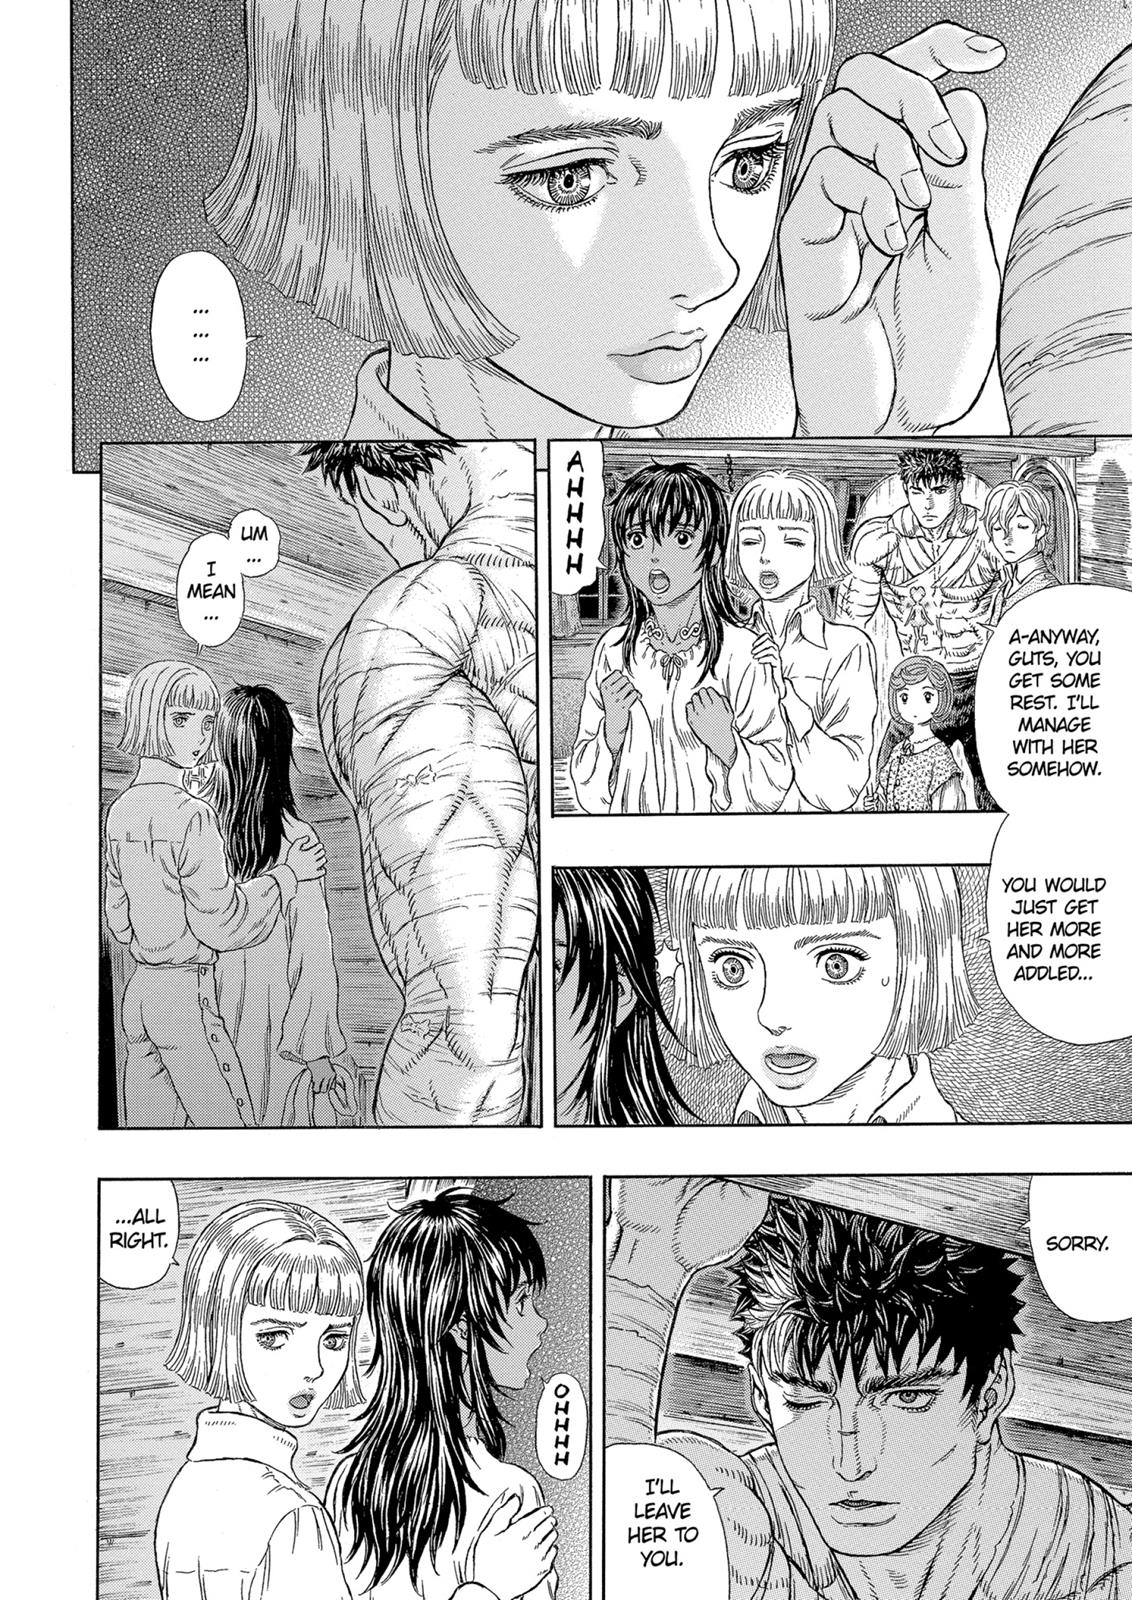 Berserk Manga Chapter 328 image 10